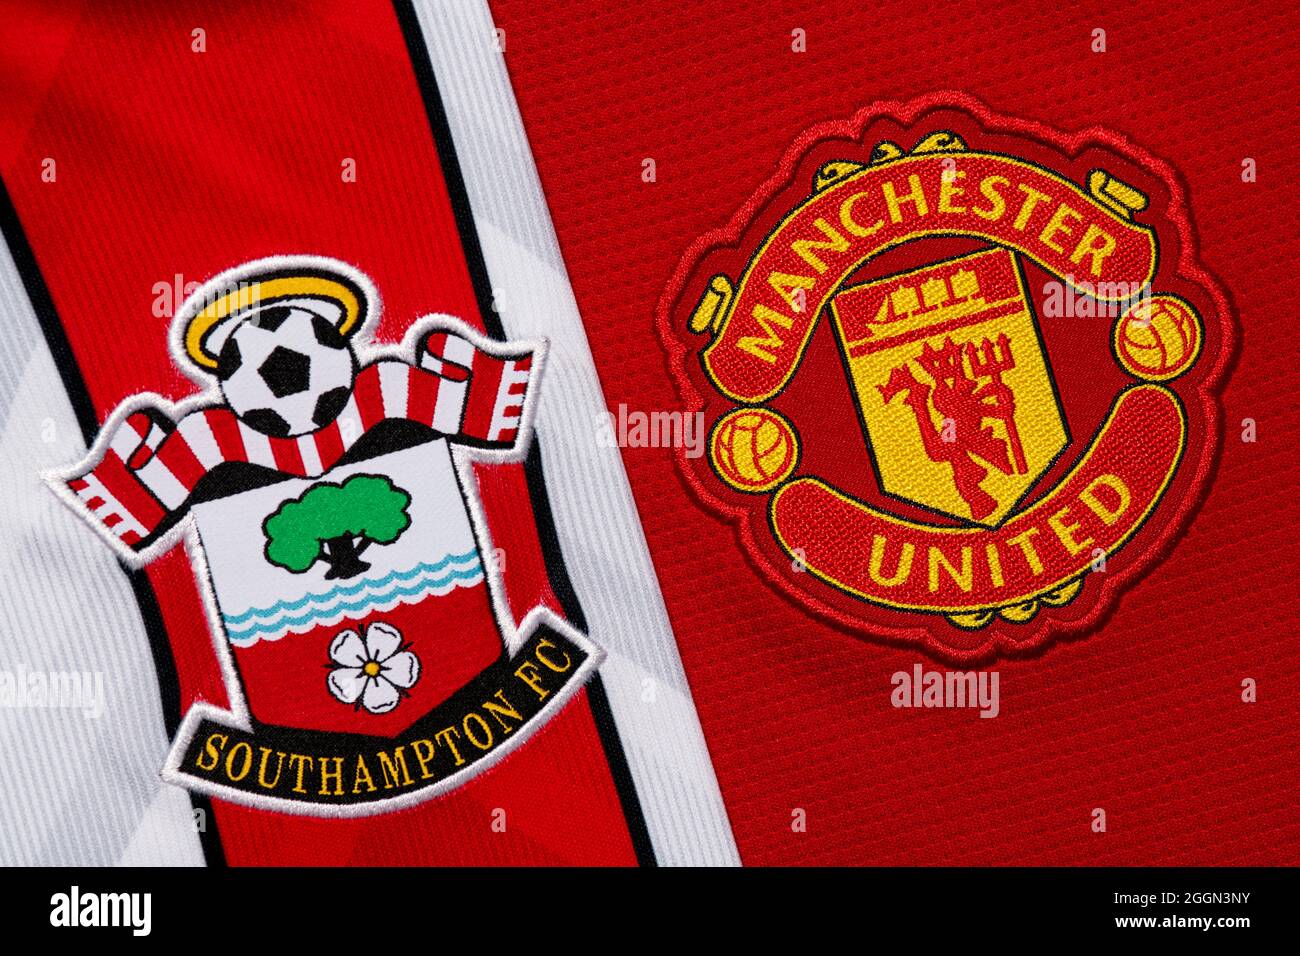 Nahaufnahme des Manchester United & Southampton Vereinswappens. Stockfoto